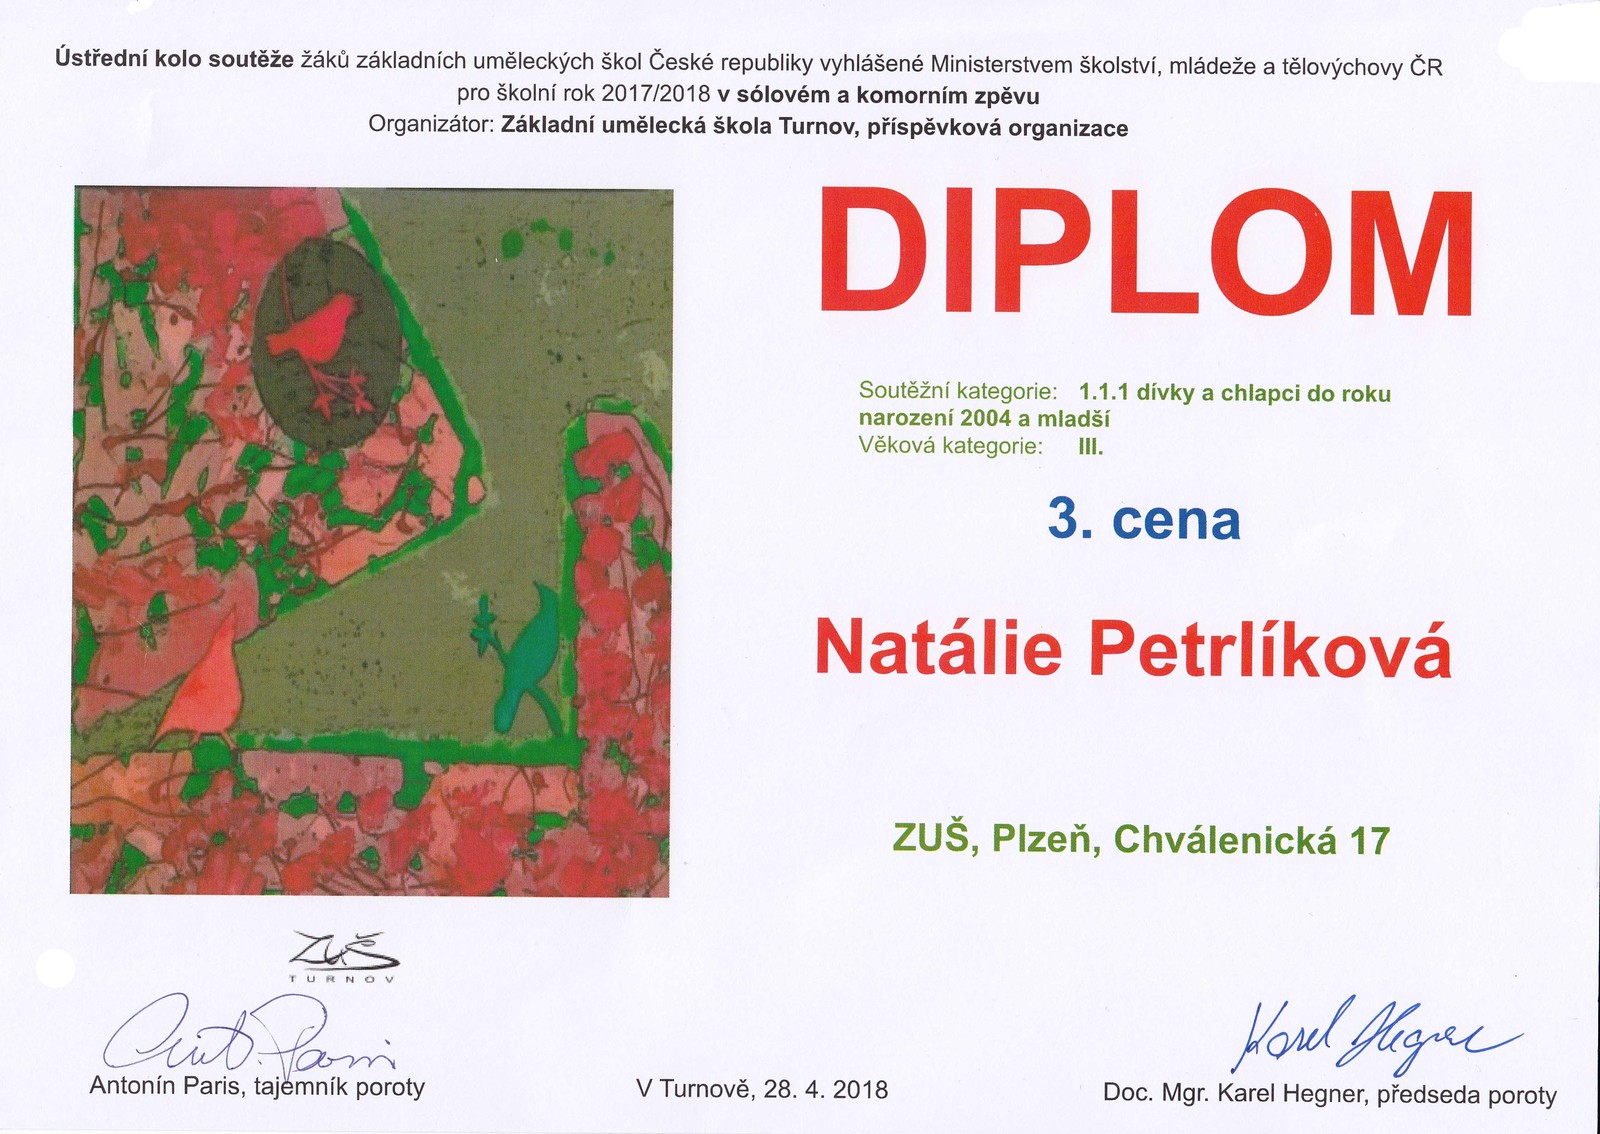 Ústřední kolo v Turnově - 28.4. 2018 - Diplom Natálie Petrlíkové